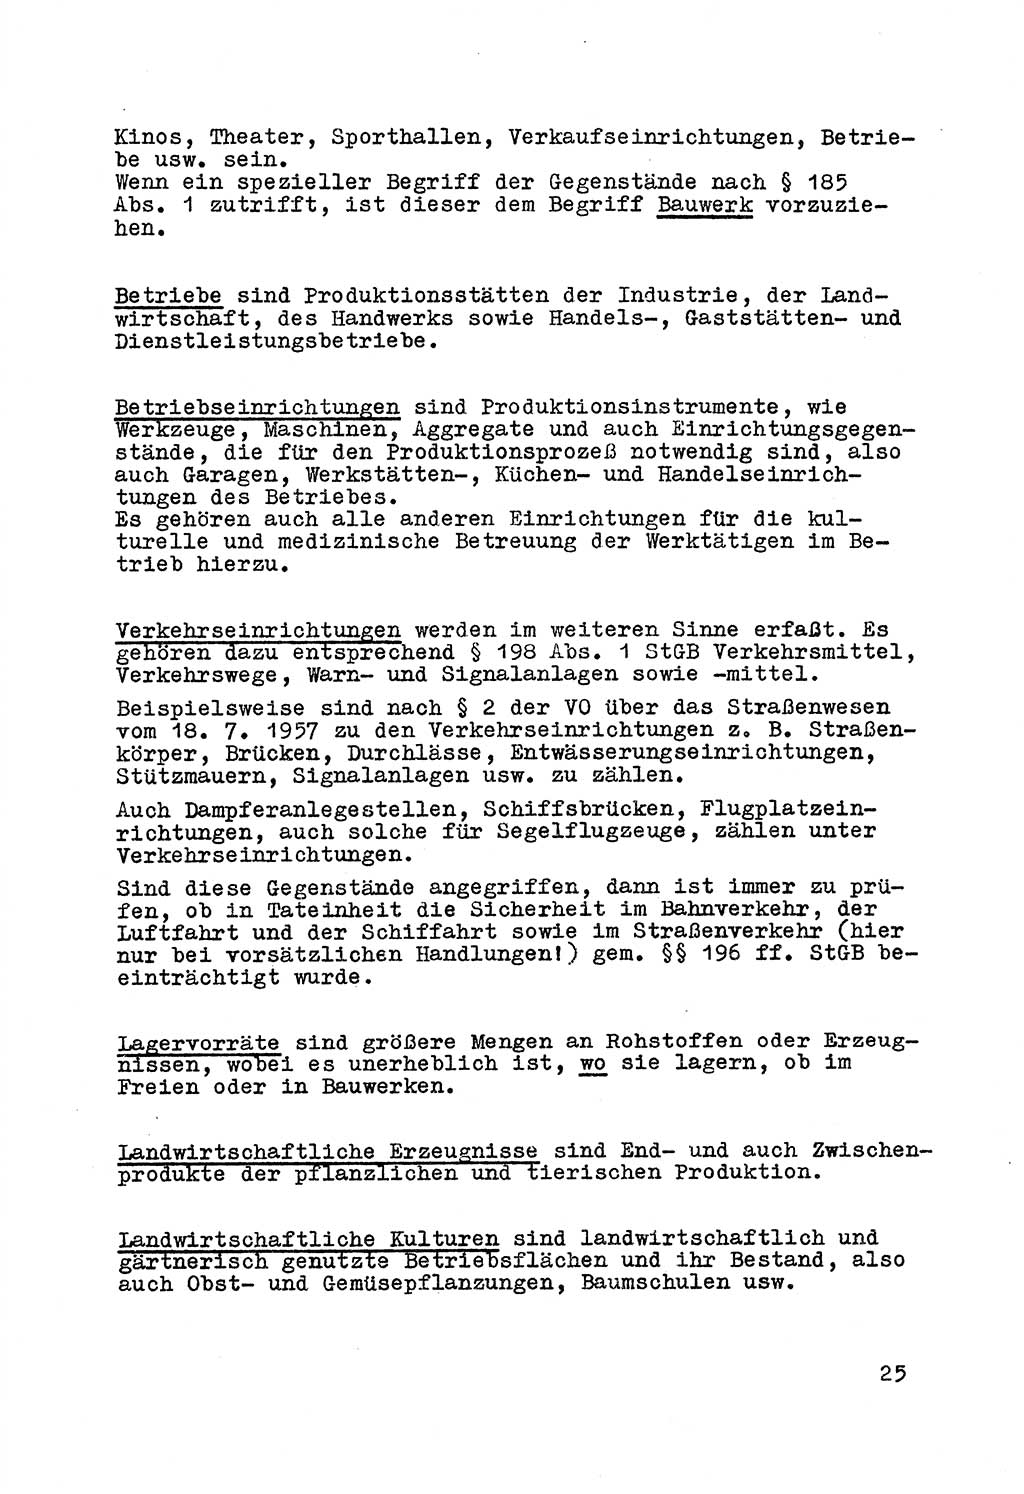 Strafrecht der DDR (Deutsche Demokratische Republik), Besonderer Teil, Lehrmaterial, Heft 7 1970, Seite 25 (Strafr. DDR BT Lehrmat. H. 7 1970, S. 25)